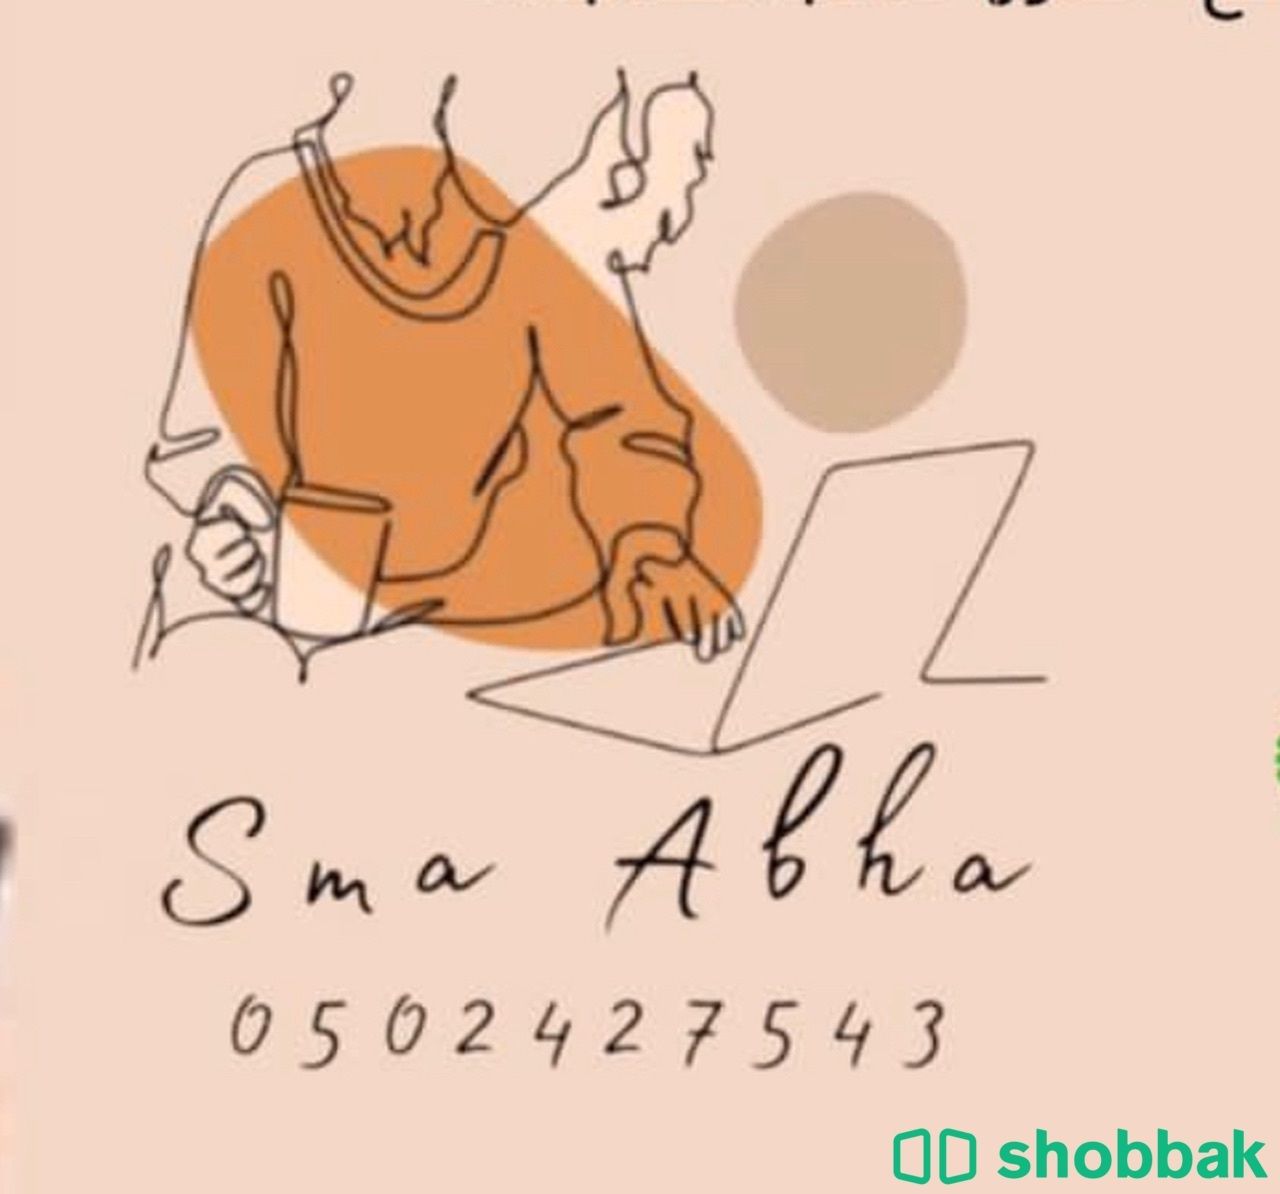 خدمات الكترونية  Shobbak Saudi Arabia